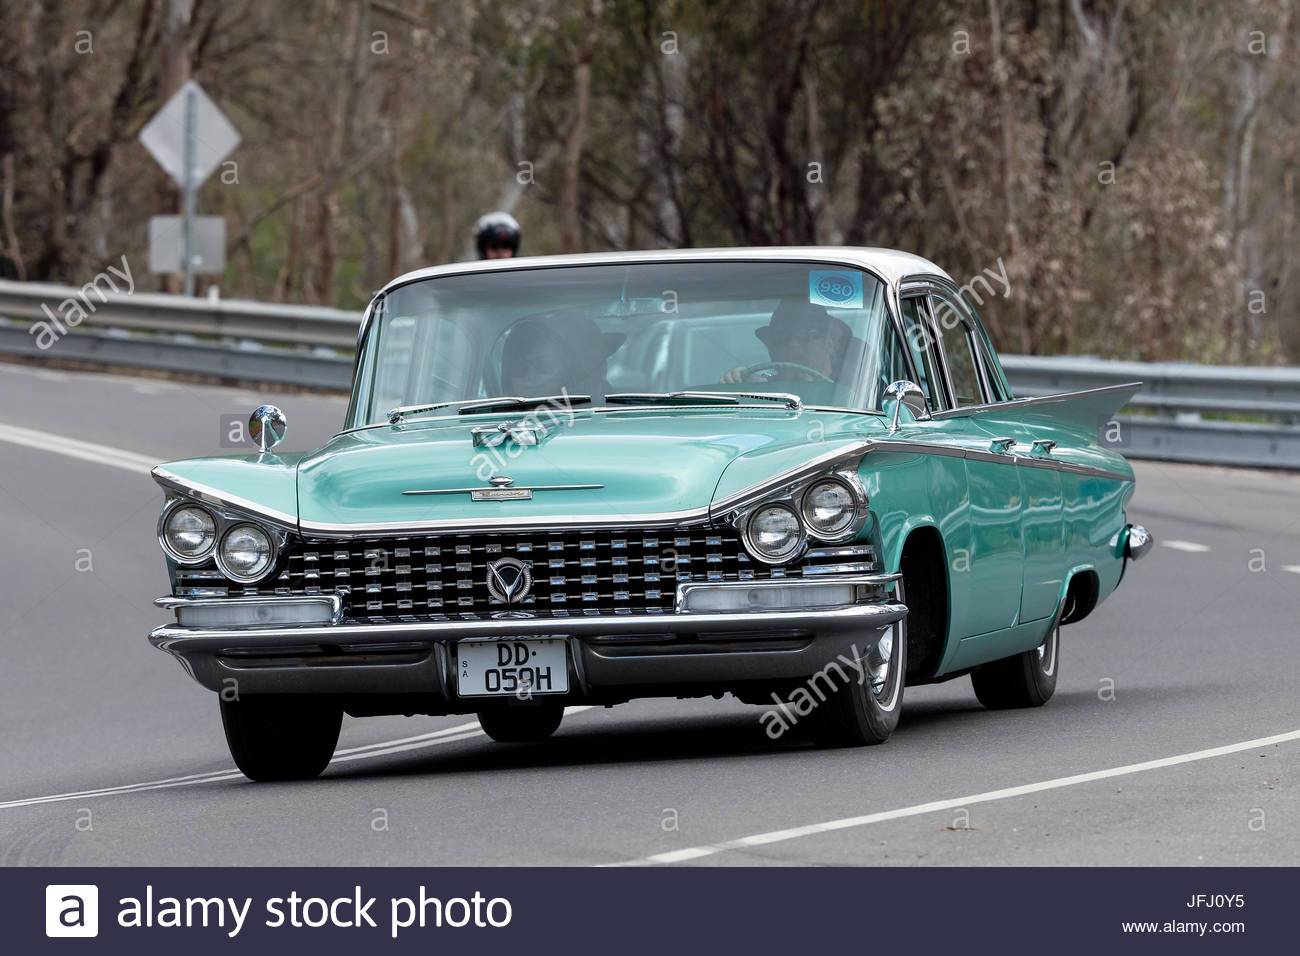 vintage-1959-buick-lesabre-sedan-conducir-en-carreteras-del-pais-cerca-de-la-localidad-de-bird...jpg